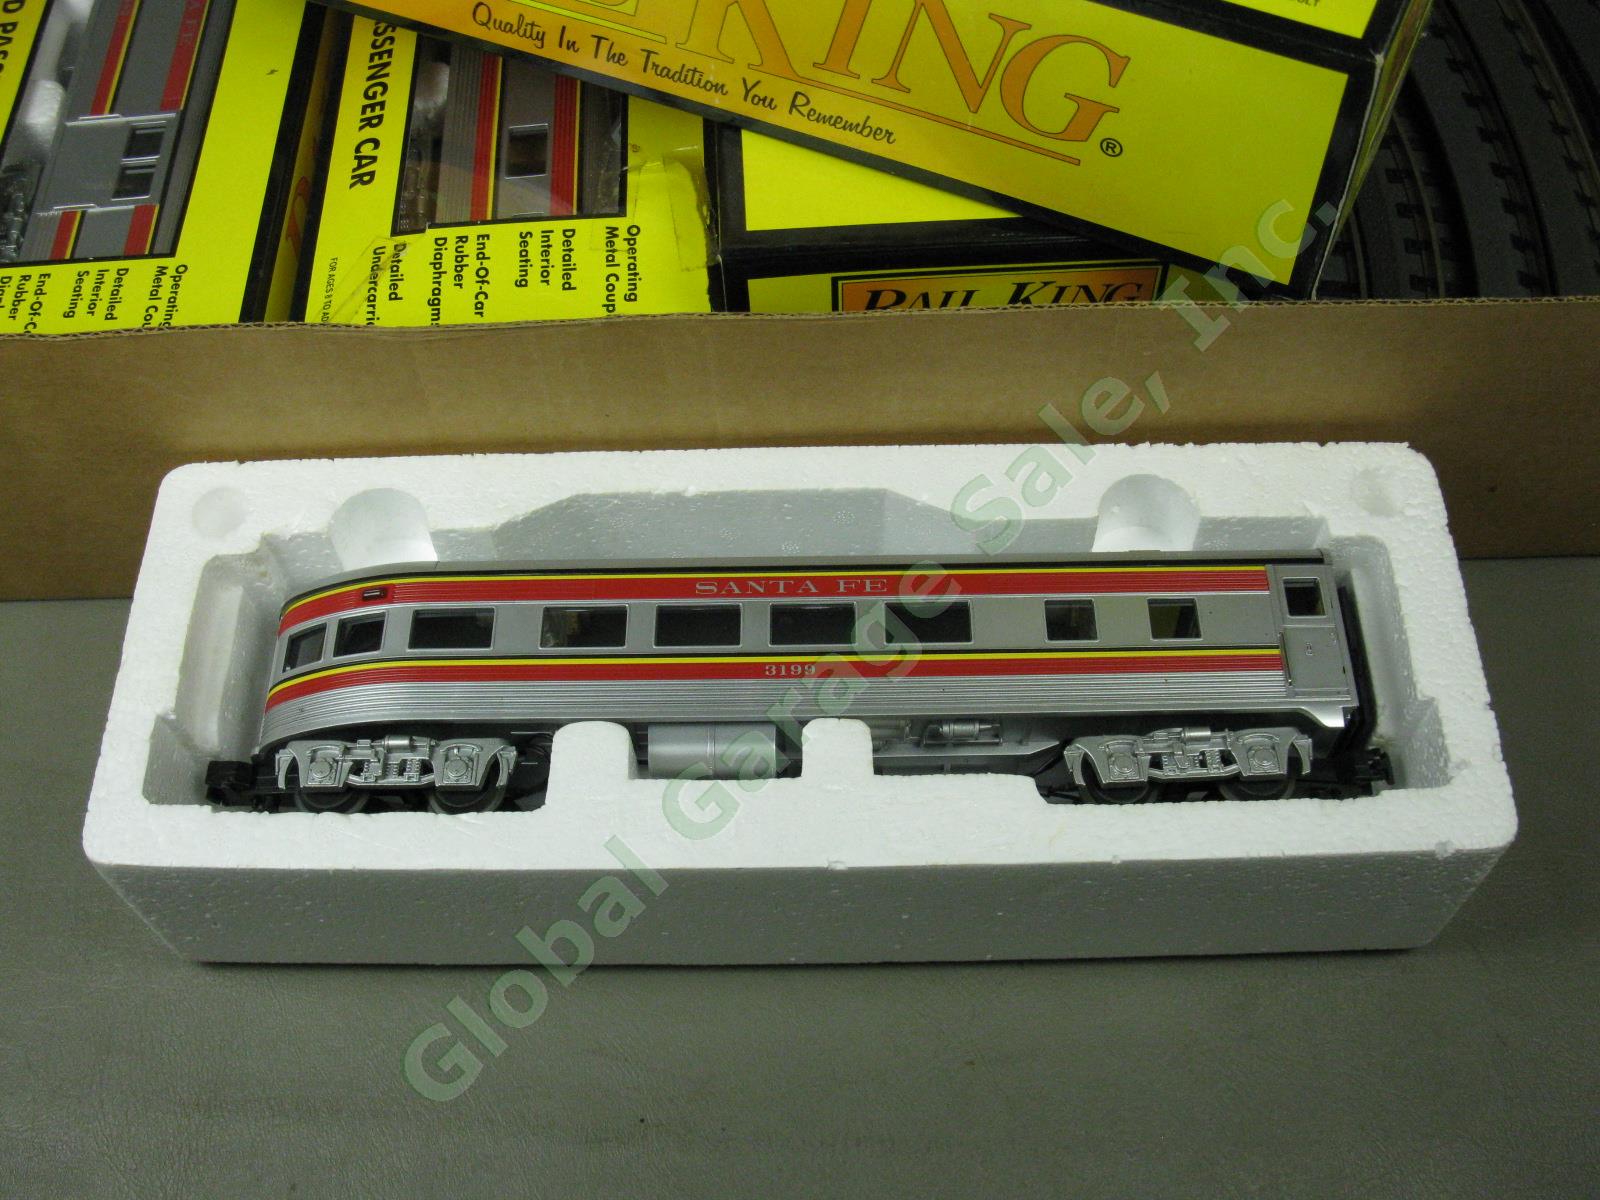 MTH Rail King Santa Fe Super Chief F-3 RTR Passenger Train Set W/ Box 30-4021-1 8